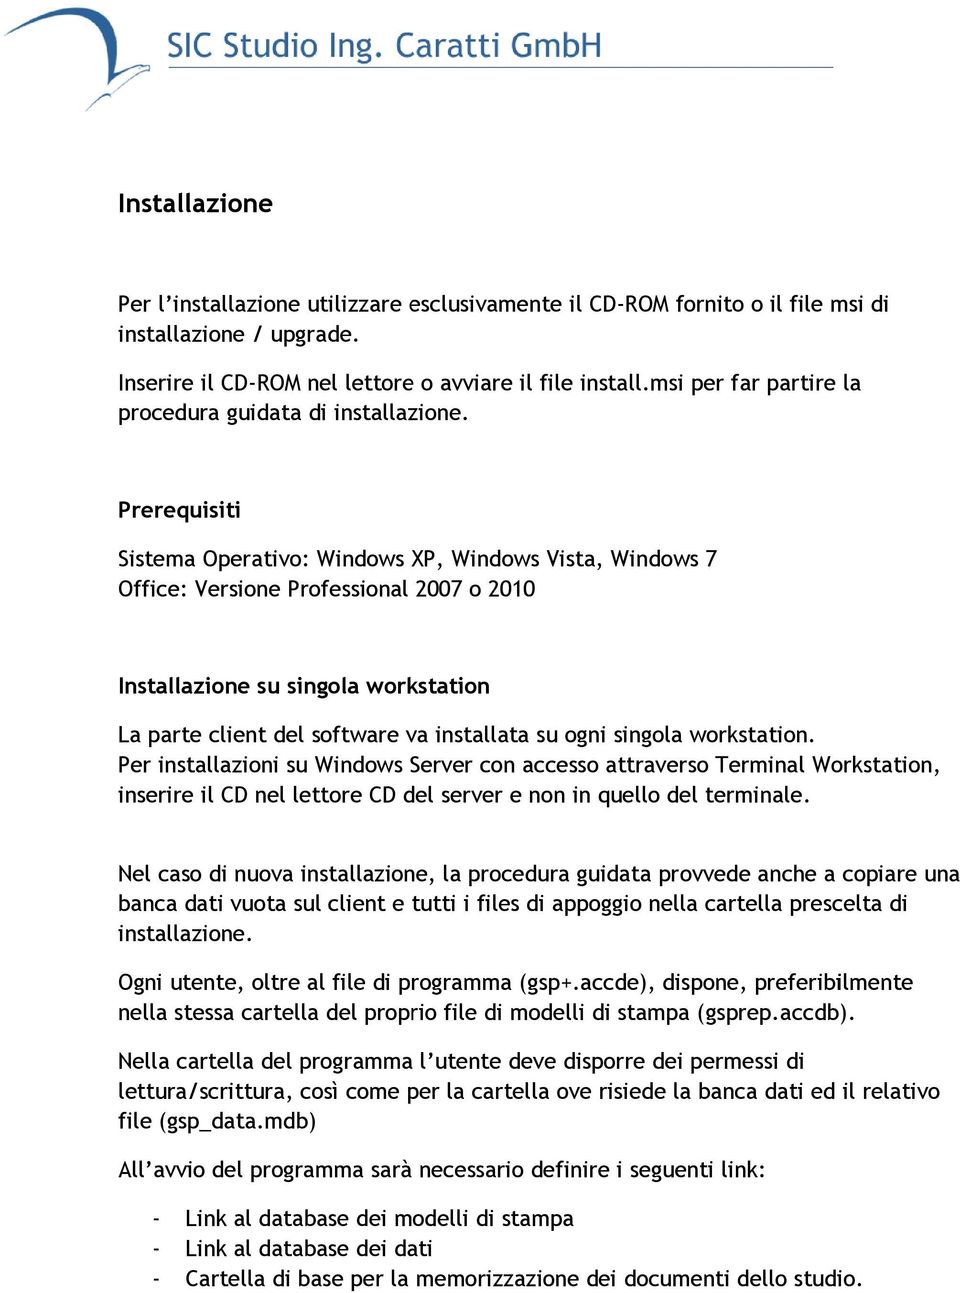 Prerequisiti Sistema Operativo: Windows XP, Windows Vista, Windows 7 Office: Versione Professional 2007 o 2010 Installazione su singola workstation La parte client del software va installata su ogni